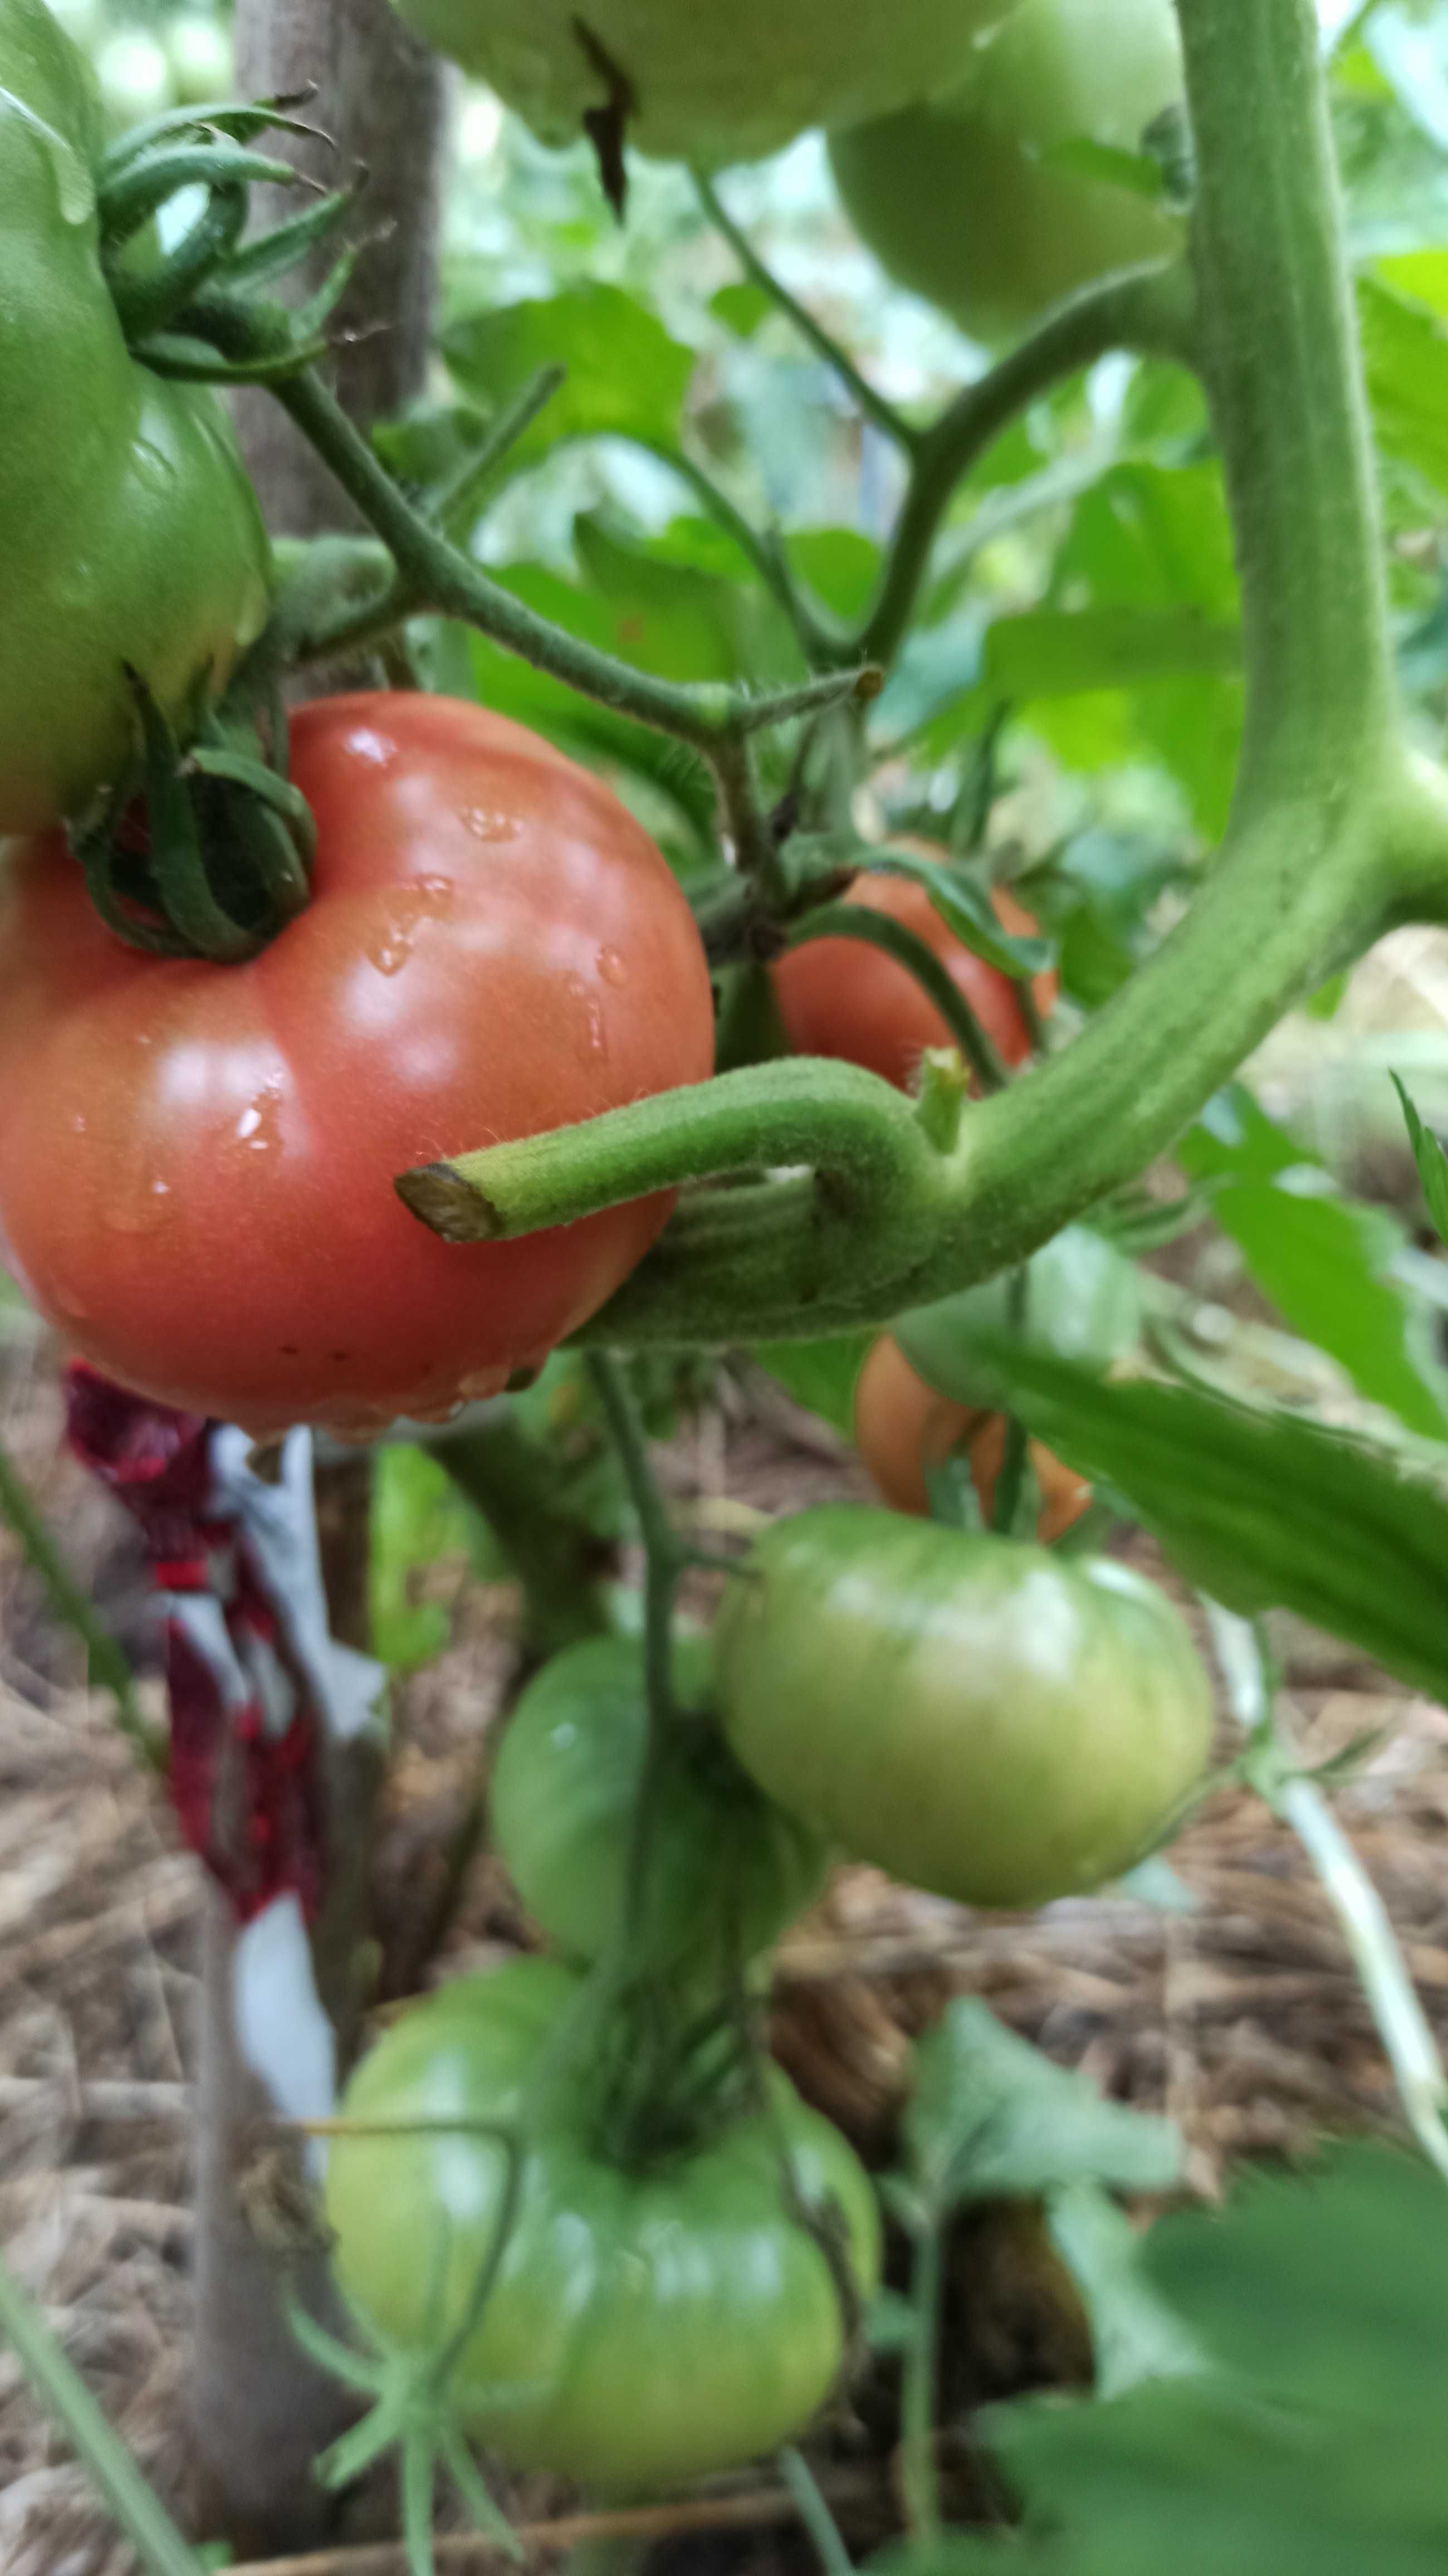 Розсада томатів (помідорів), вирощена на біогумусі. В стаканчиках